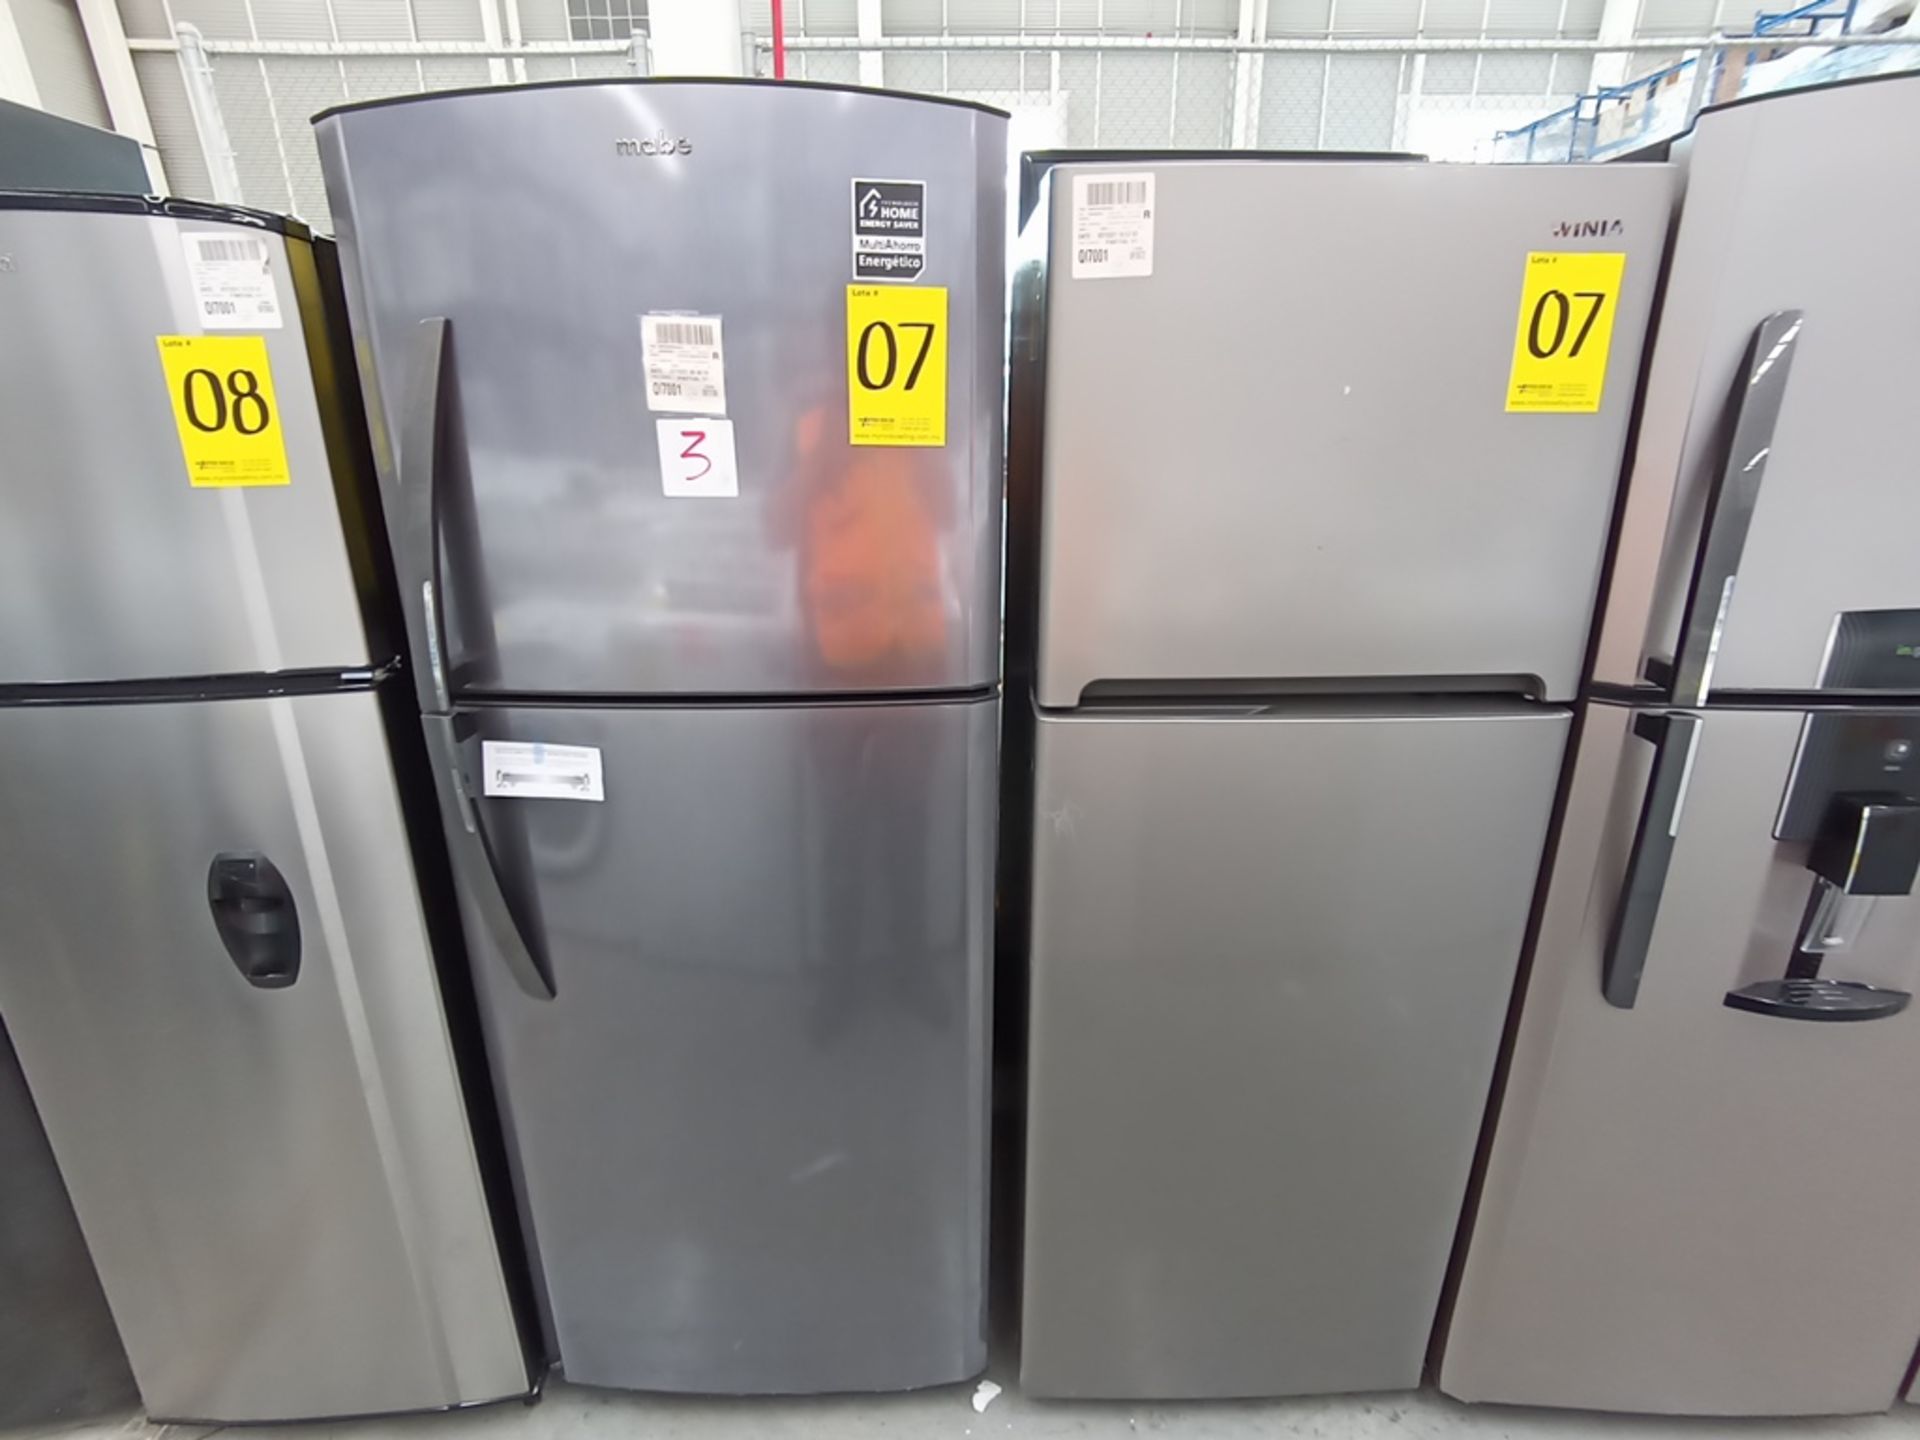 Lote de 2 refrigeradores contiene: 1 Refrigerador con dispensador de agua, Marca Winia, Modelo DFR- - Image 3 of 15